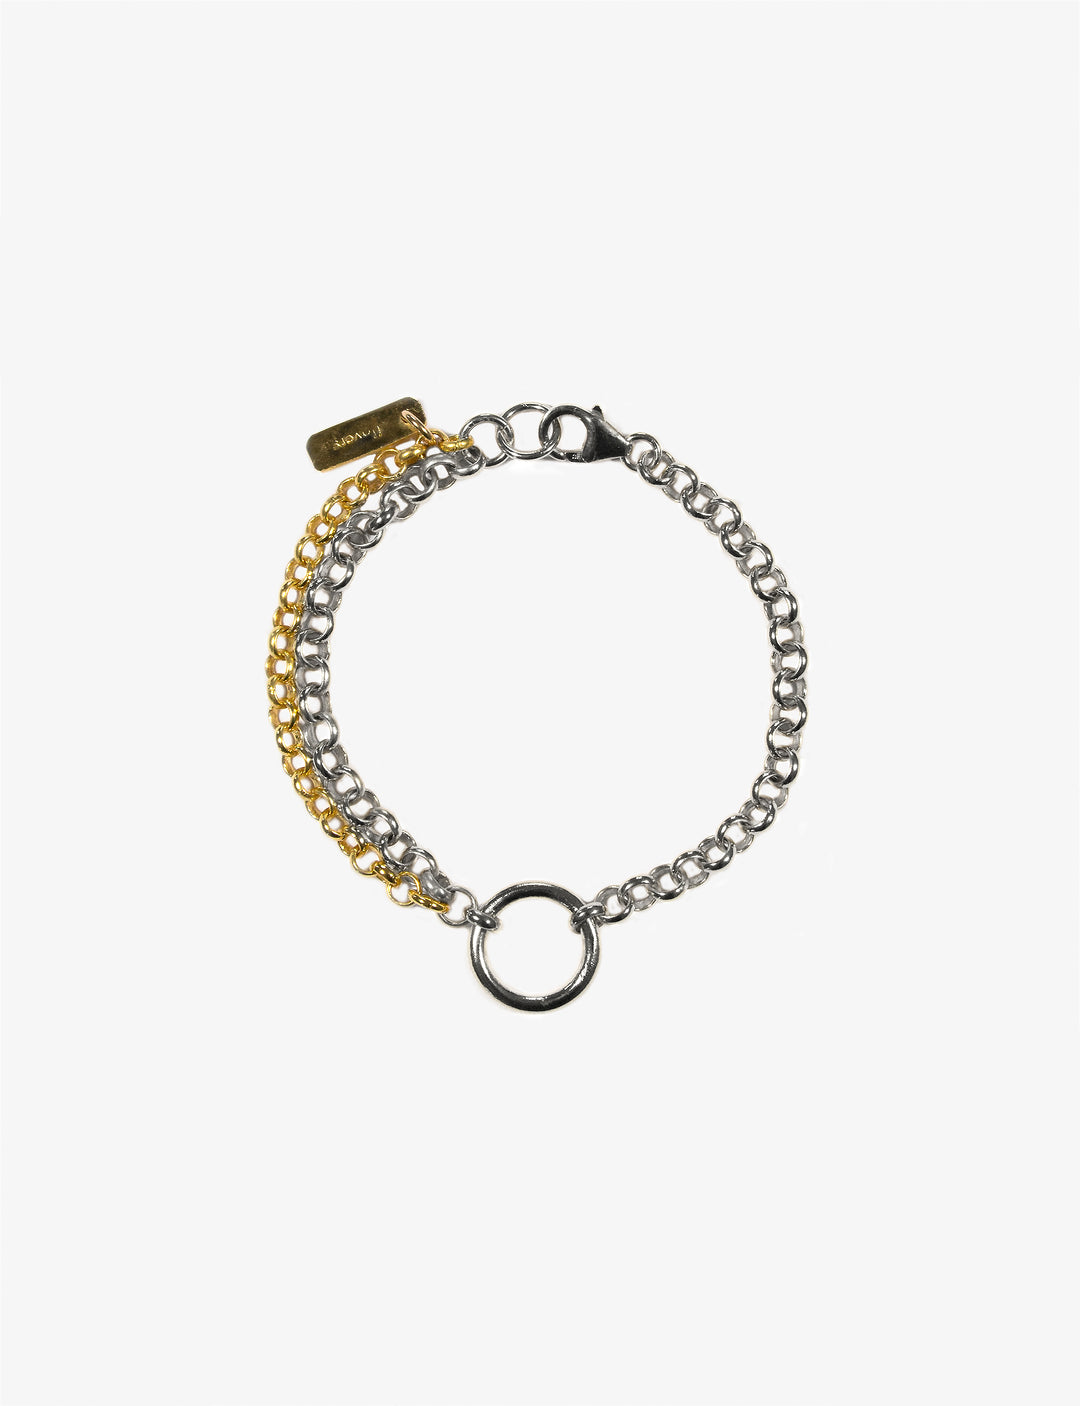 Handmade women gold silver chain bracelet rings - Designer New York